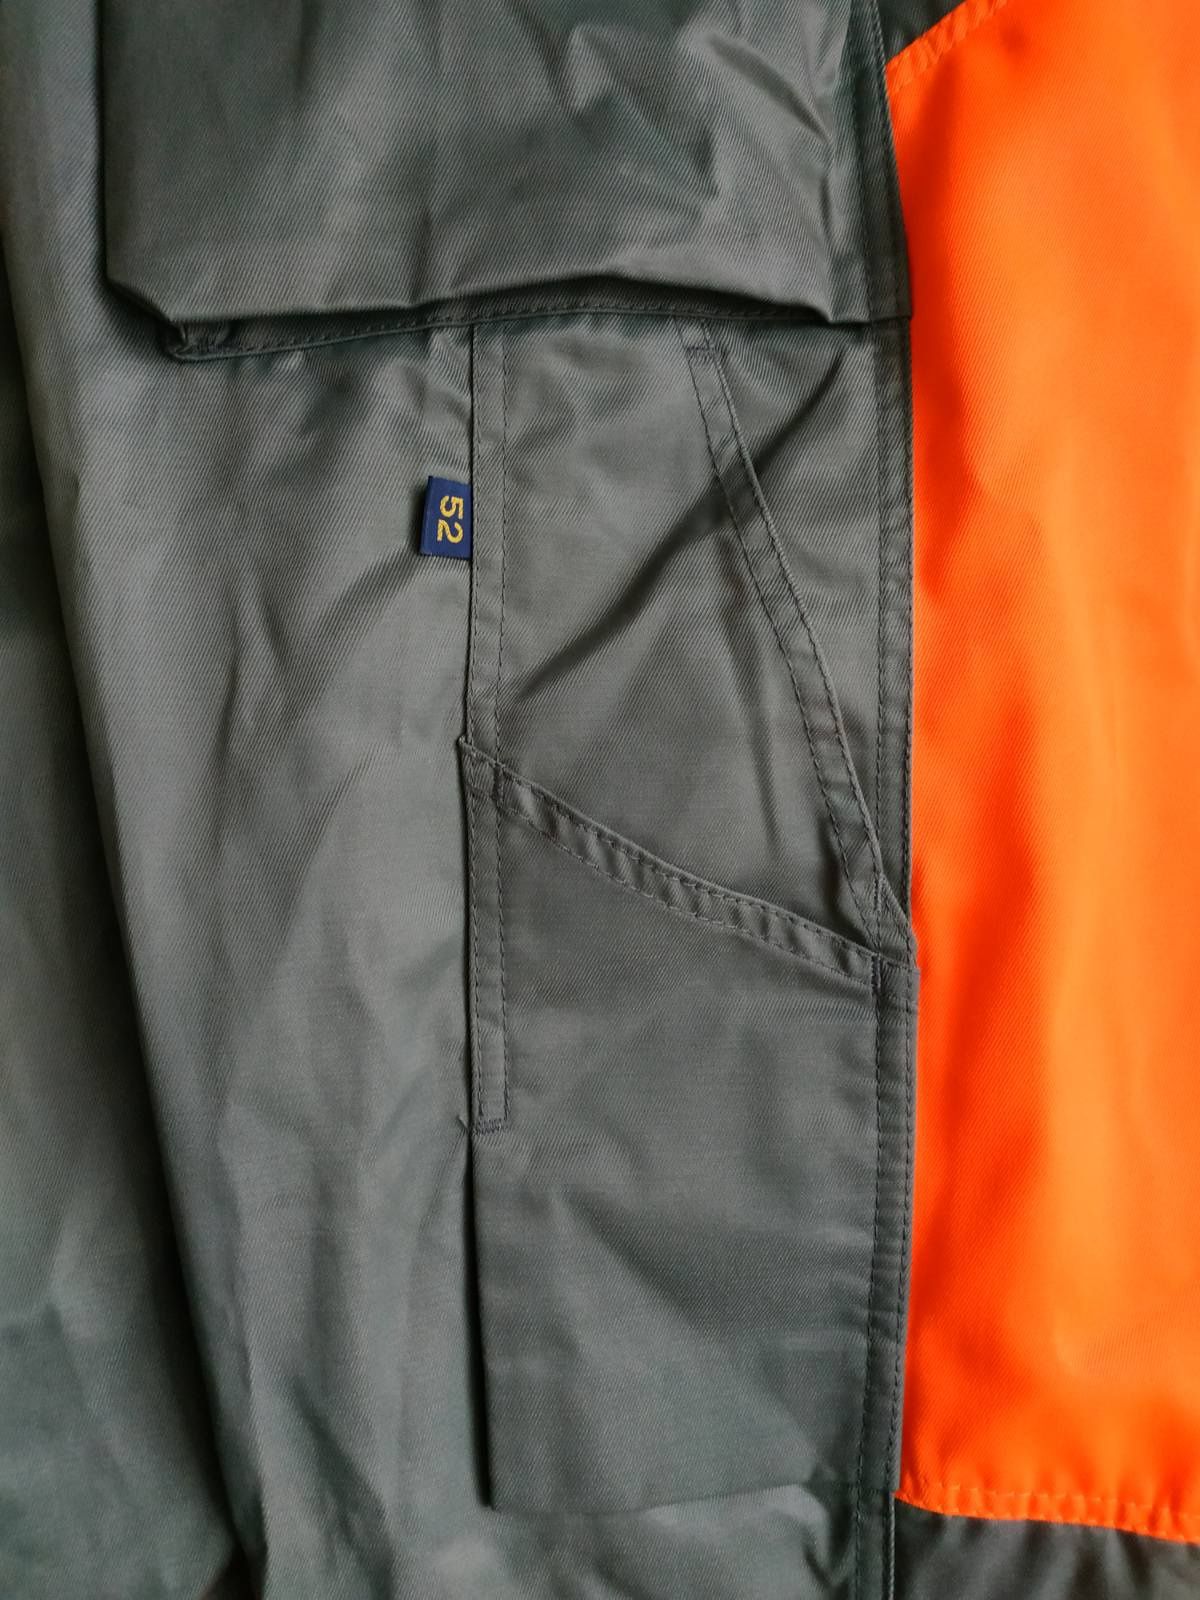 Snickers work wear штаны рабочие размер 52 (36/32), новые с биркой